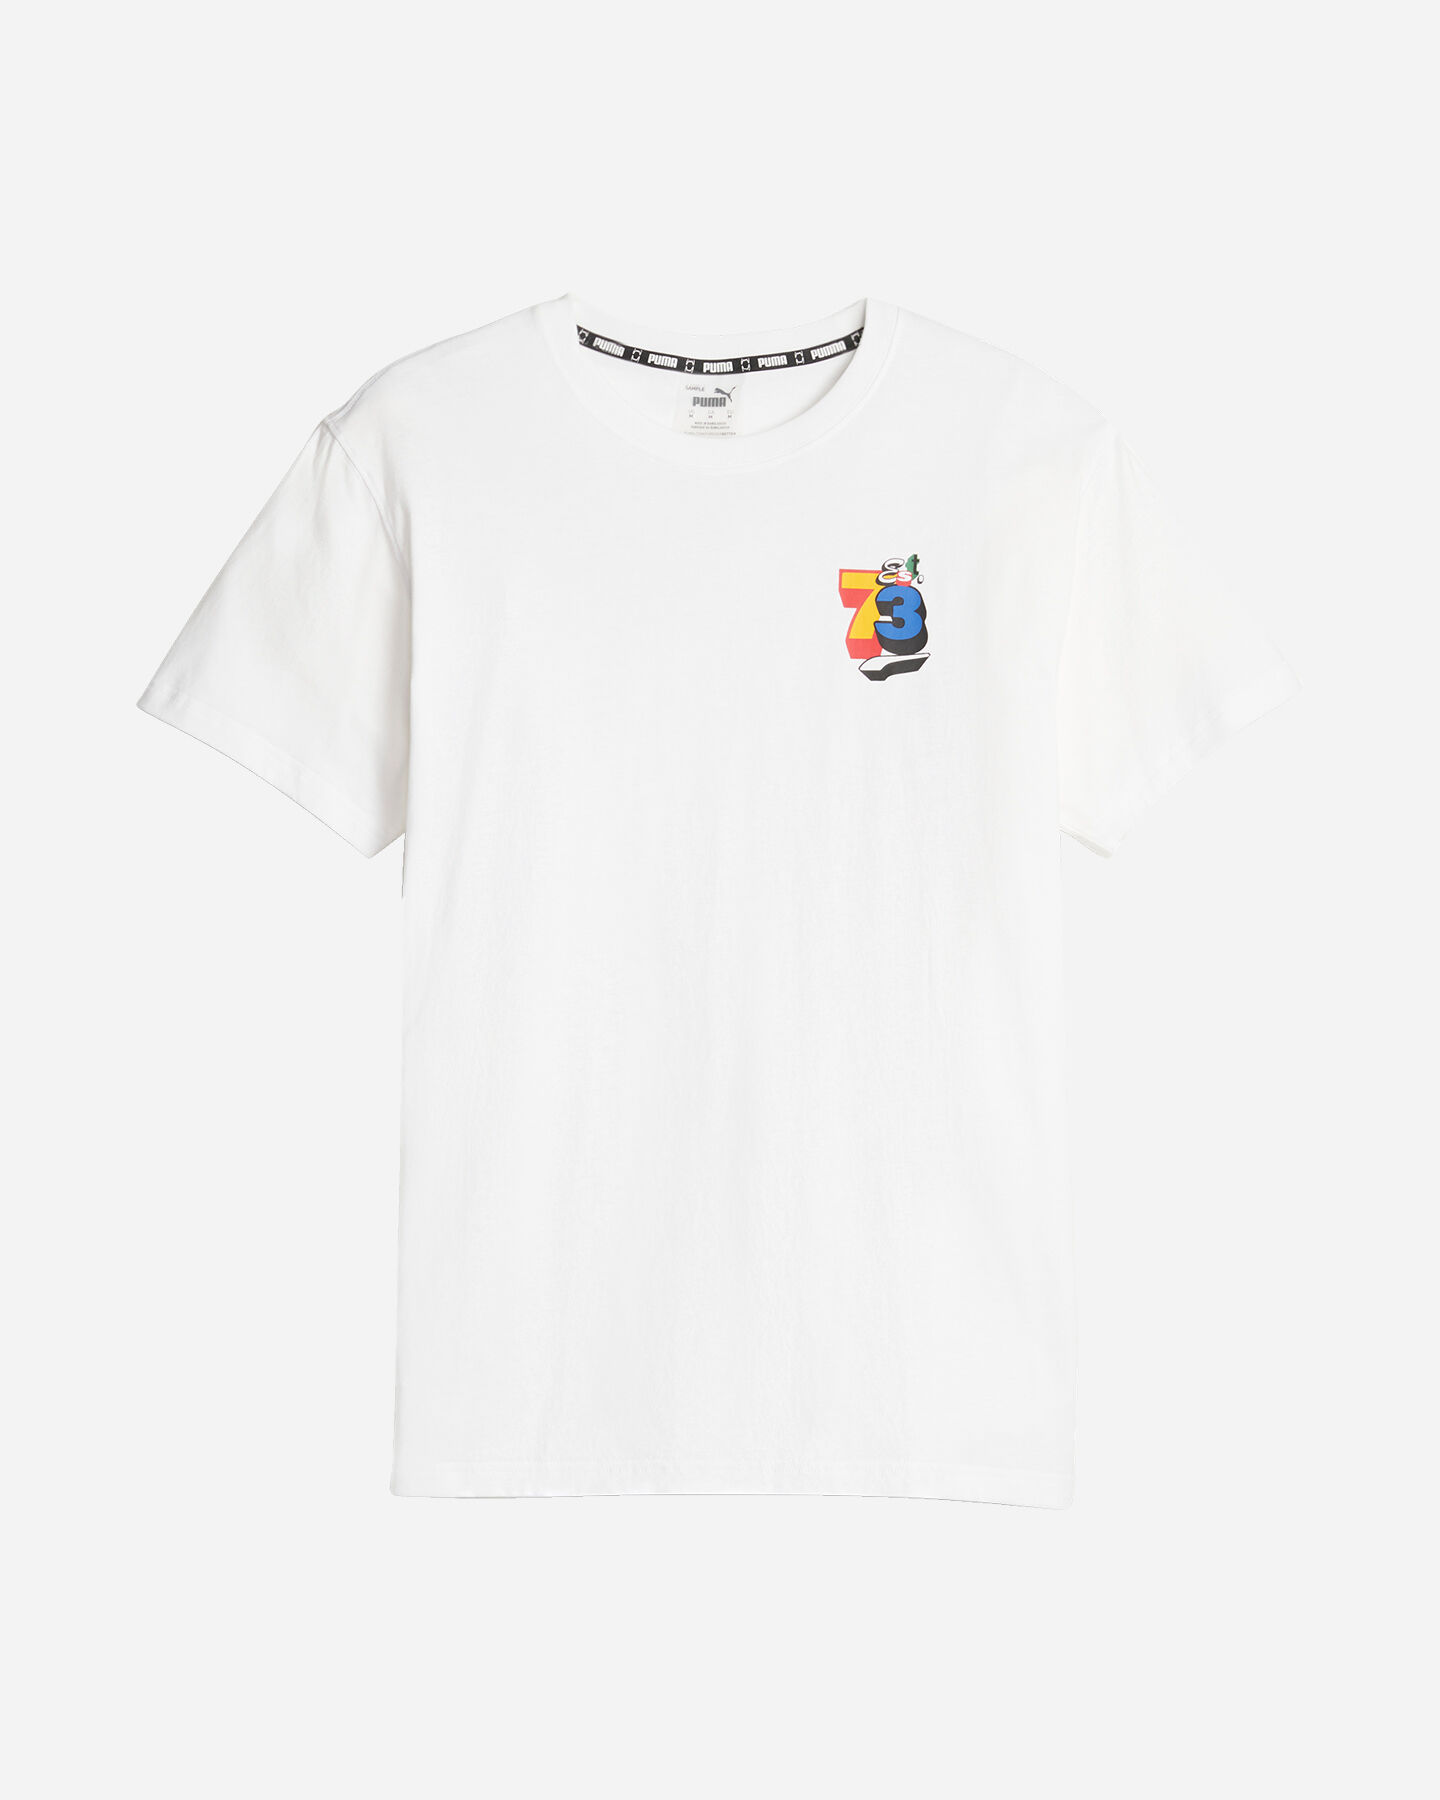  T-Shirt PUMA TRASH TALK M S5582999|01|S scatto 0